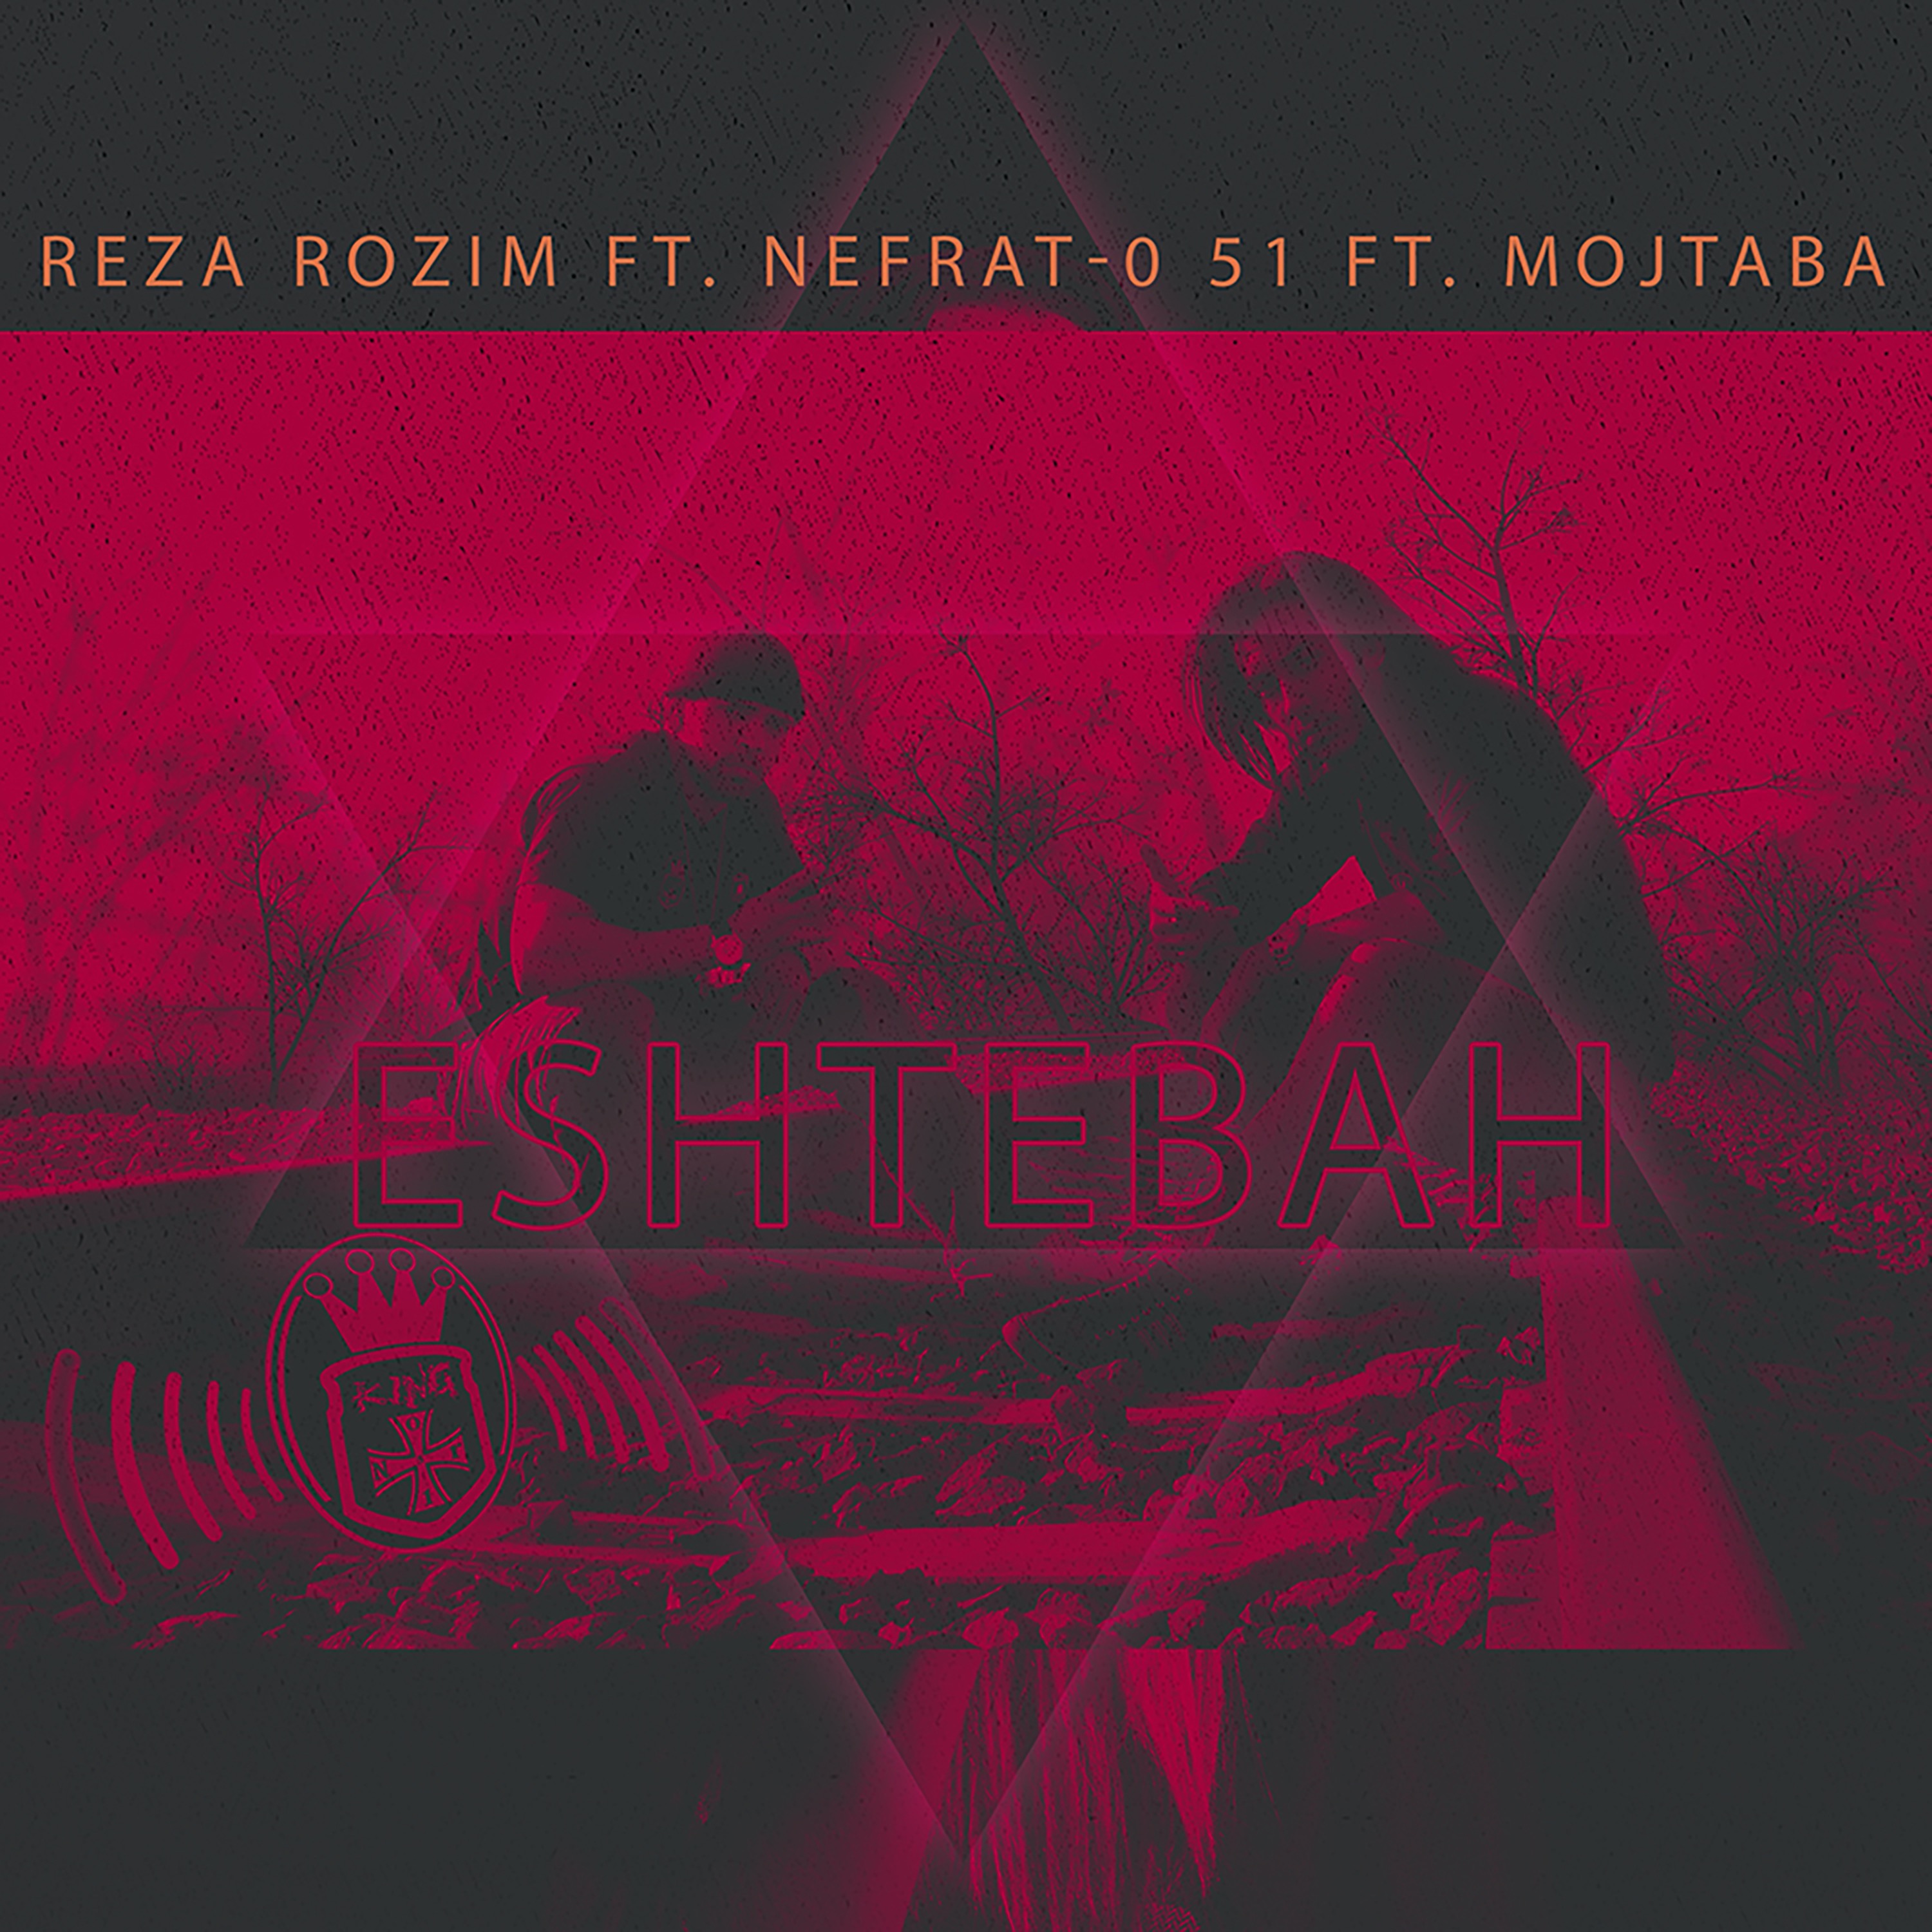  دانلود آهنگ جدید رُظیم - اشتباه | Download New Music By Reza Rozim - Eshtebah (feat. Nefrat 051 & Mojtaba)